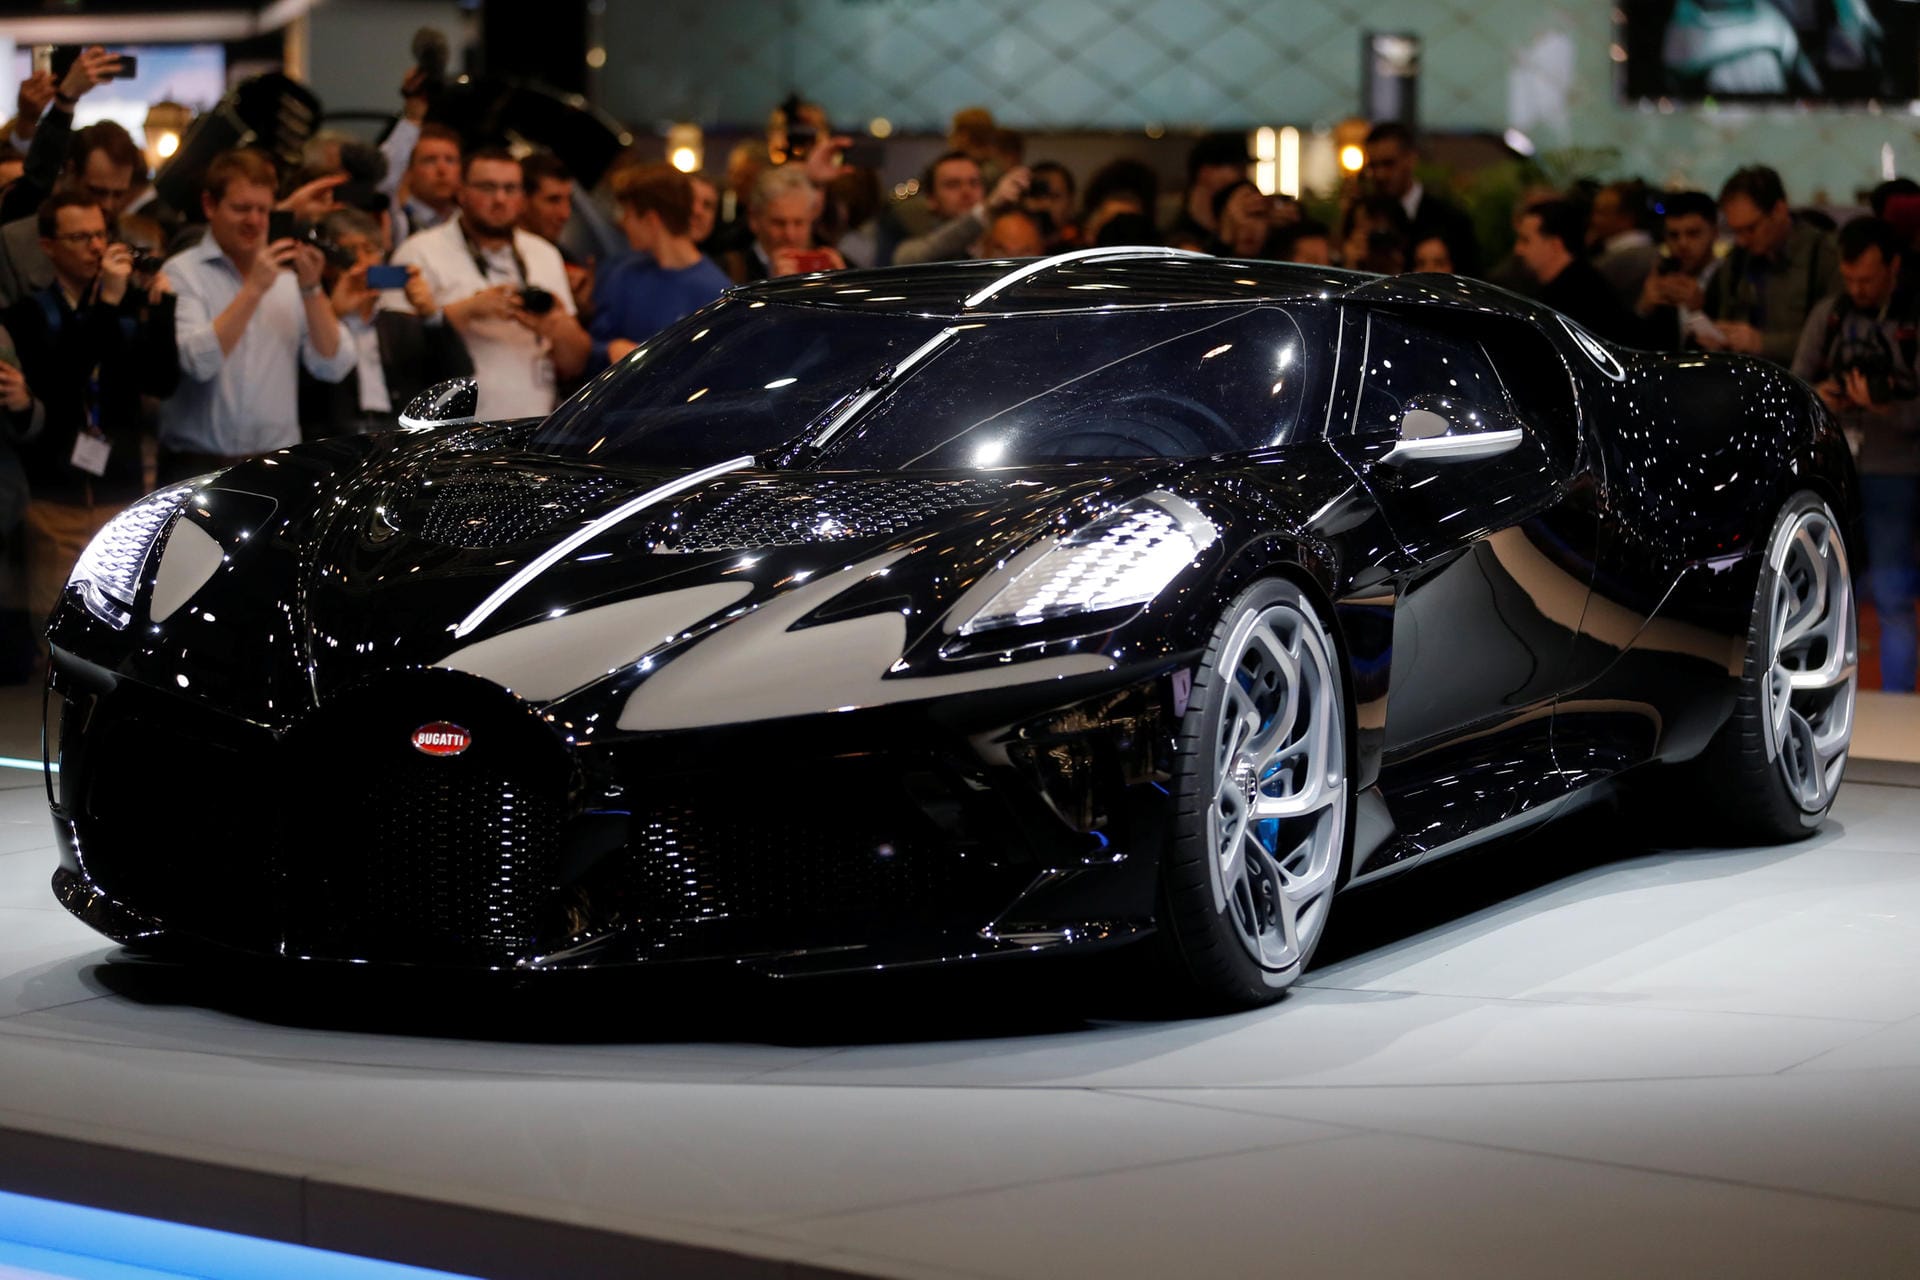 Bugatti La Voiture Noire: Der Besitzer des Einzelstücks bezahlt inklusive Steuern etwa 16 Millionen Euro, heißt es. Wer das Auto in Auftrag gegeben hat, ist nicht bekannt.